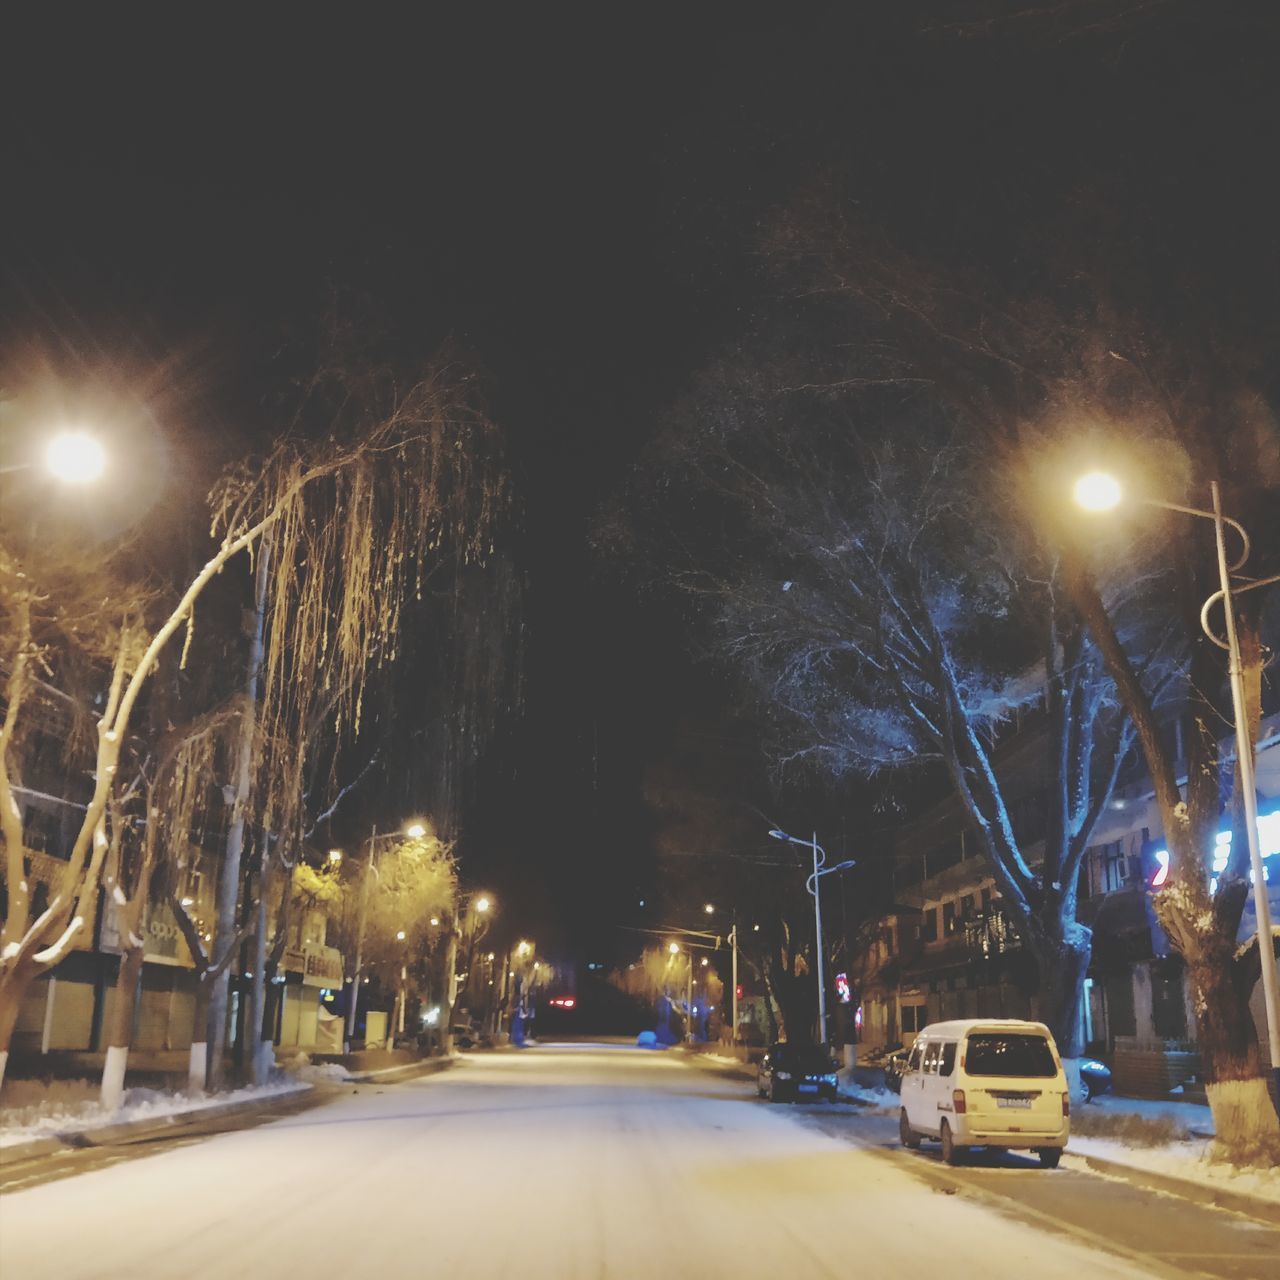 ILLUMINATED STREET LIGHTS ON ROAD AT NIGHT